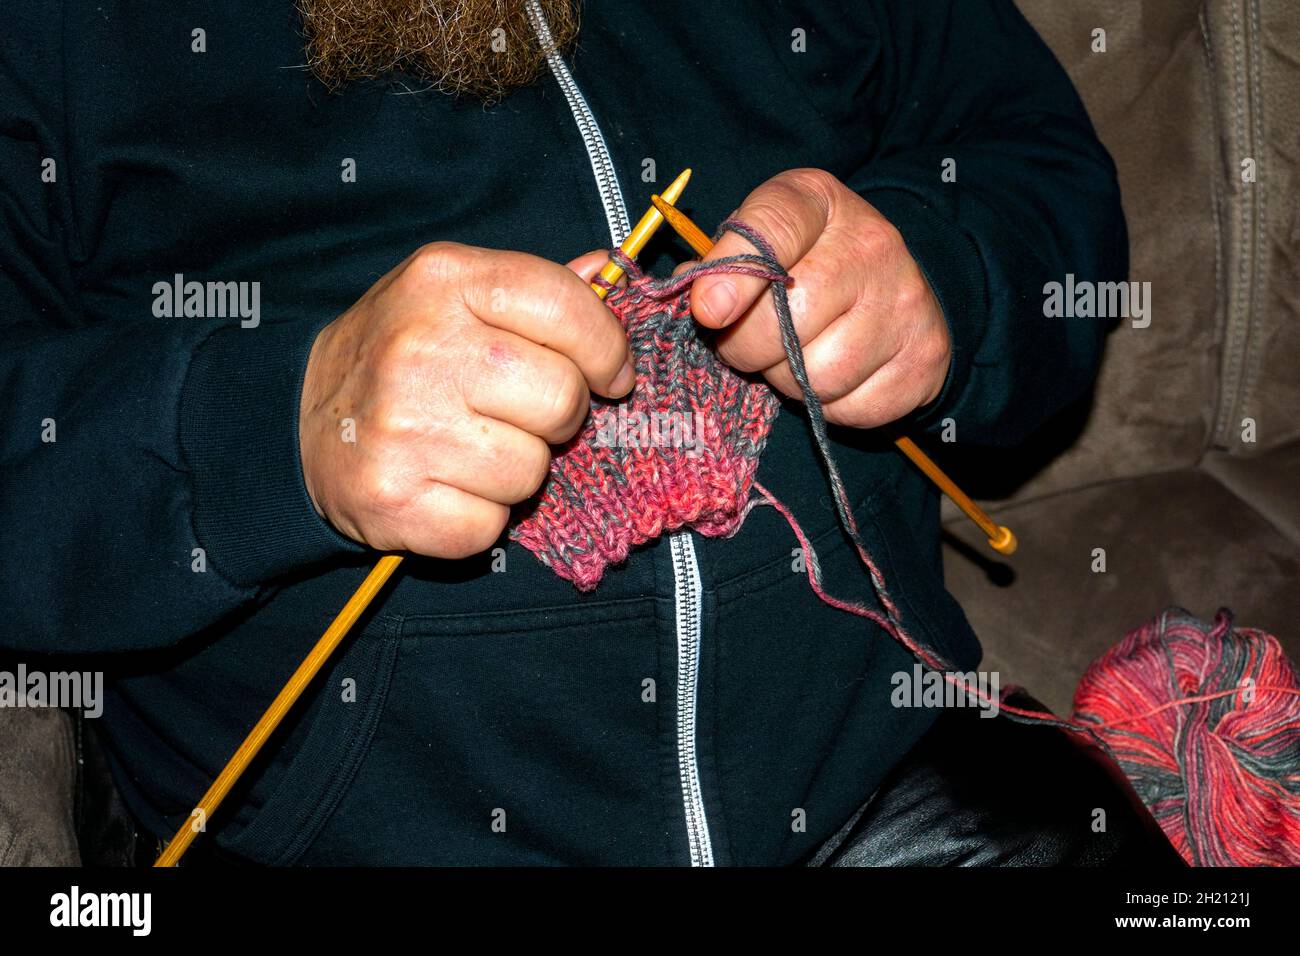 Ein Mann strickt einen Schal Foto Stock